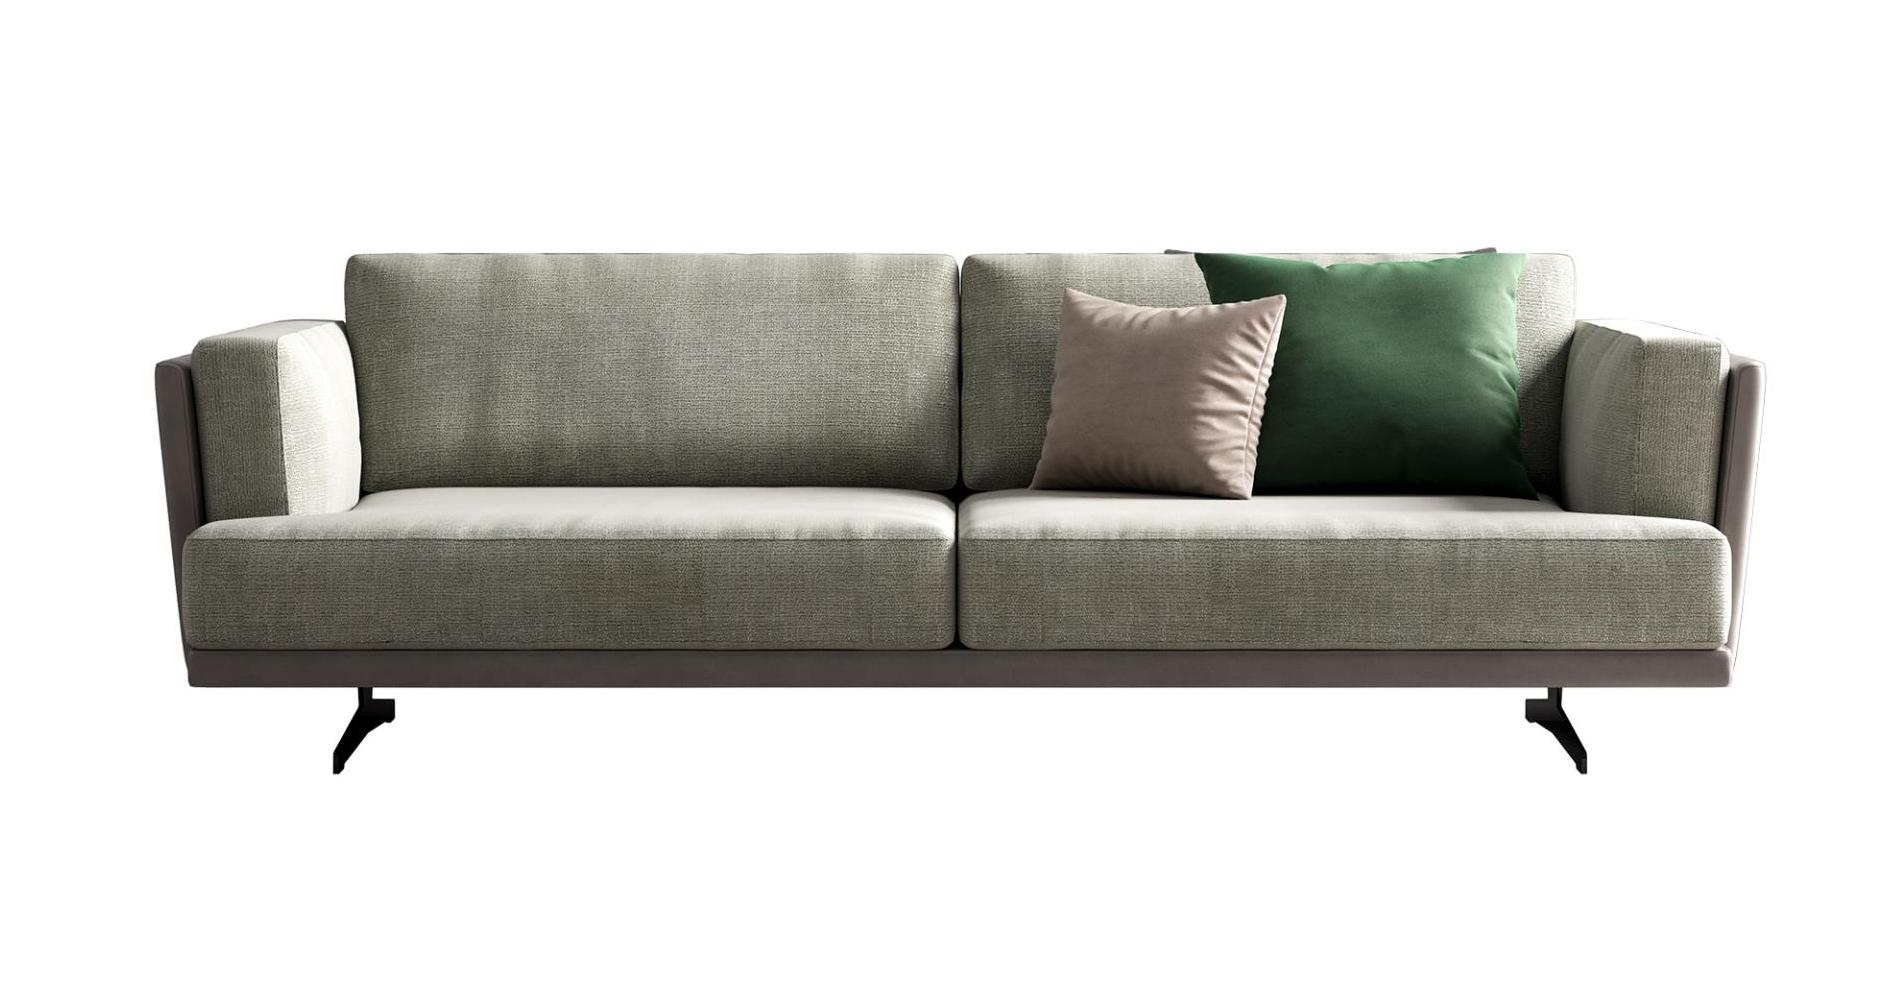 Italian Fabric & Leather Sofa 255 cm